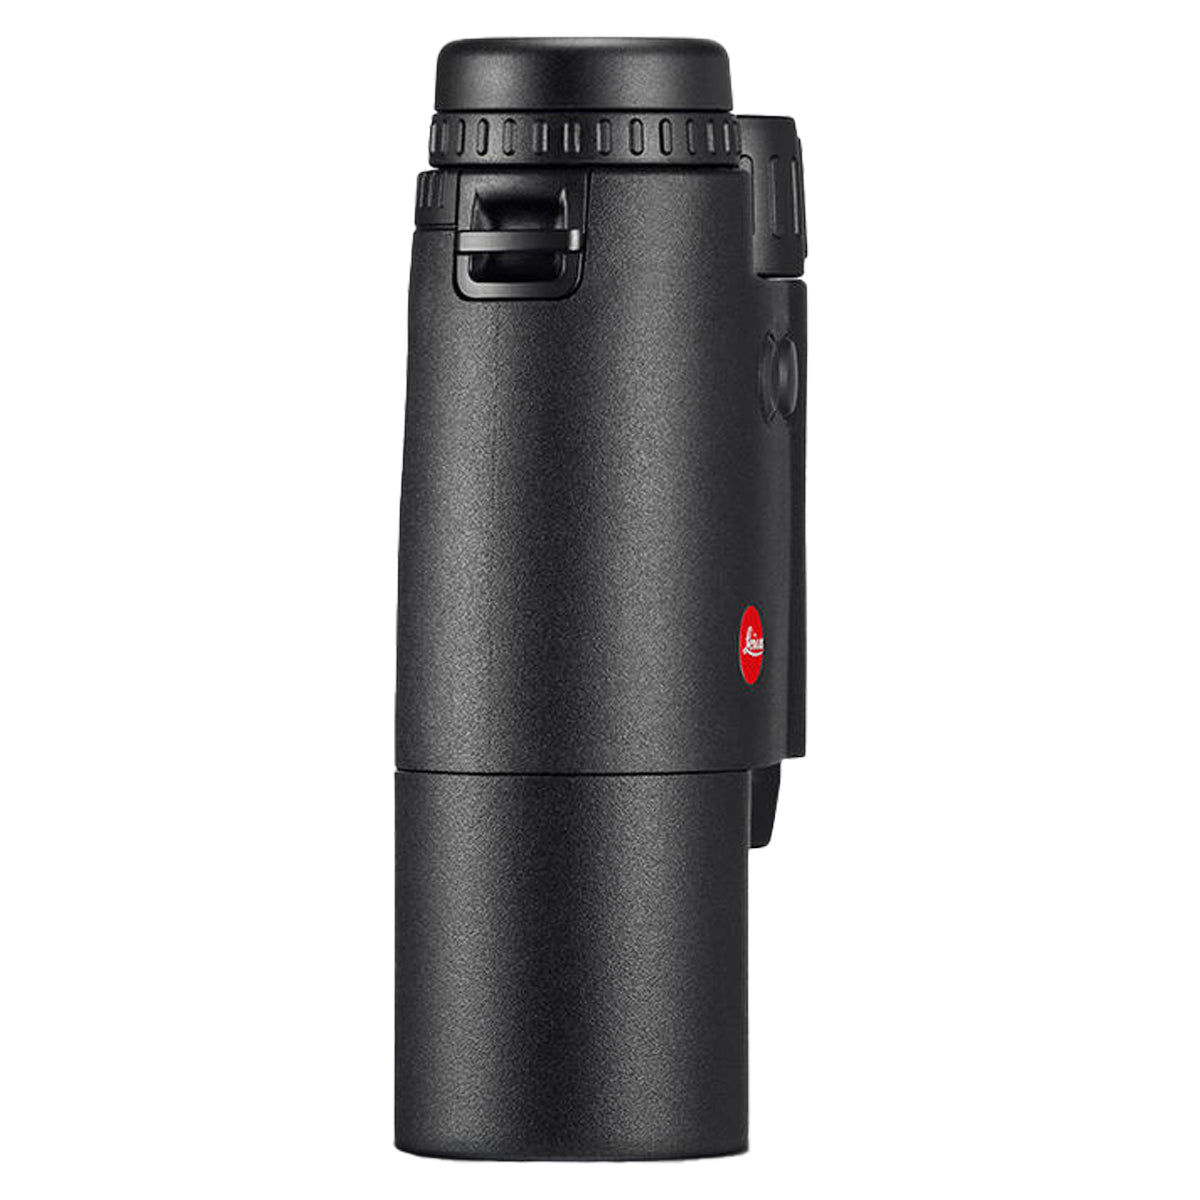 Leica Geovid-R 10x42 Rangefinding Binocular in  by GOHUNT | Leica - GOHUNT Shop